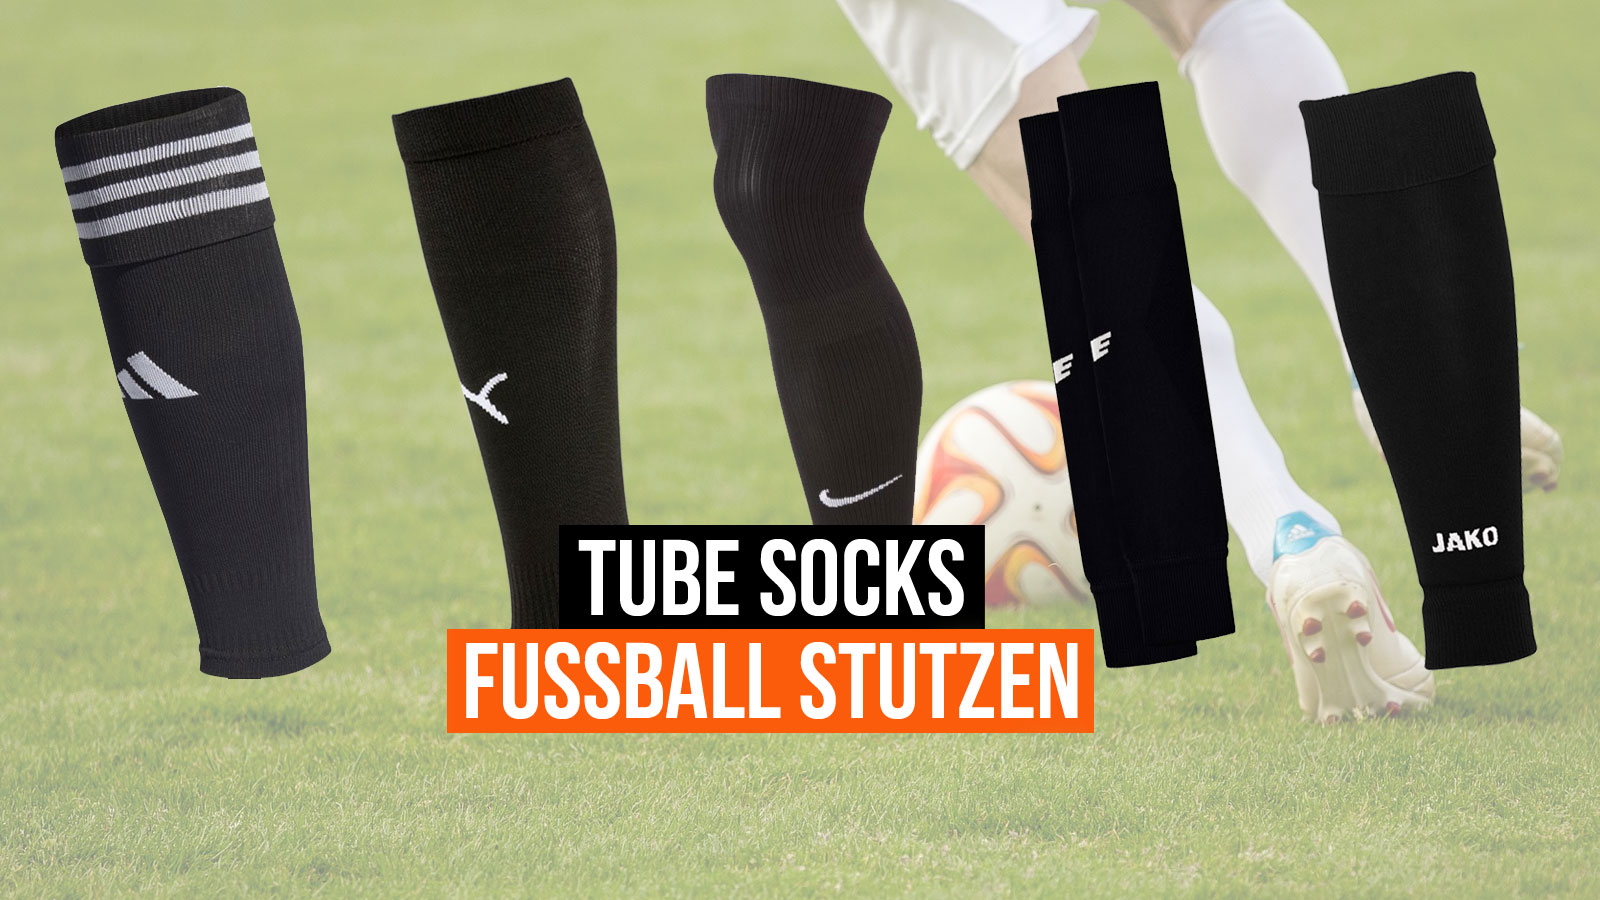 Tube Socks Fußball Stutzen online finden und bestellen